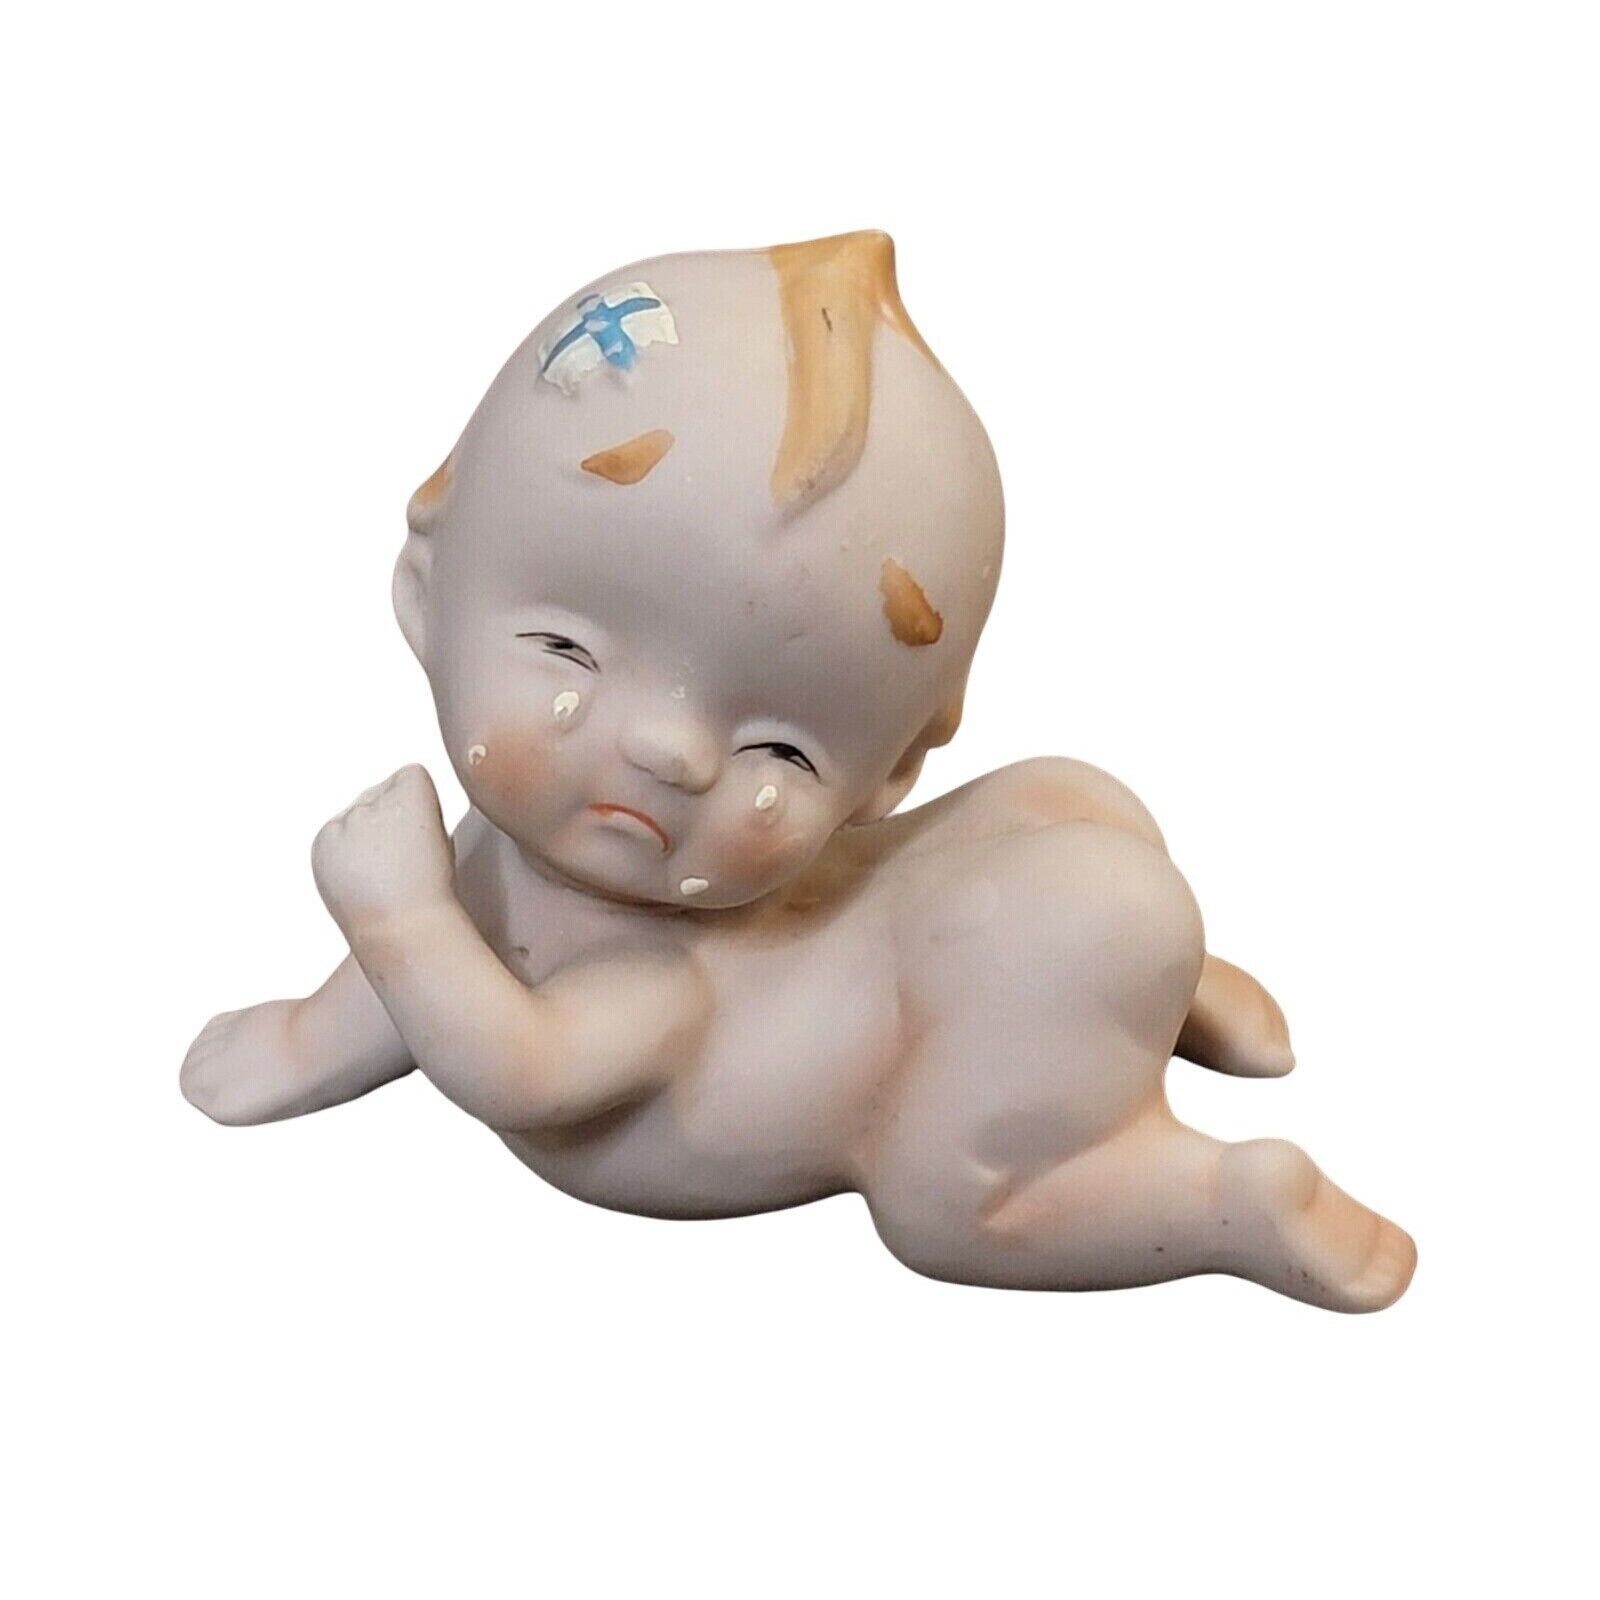 Vintage Brinns Crying Kewpie Baby Crawling Bisque Figurine Made in Japan